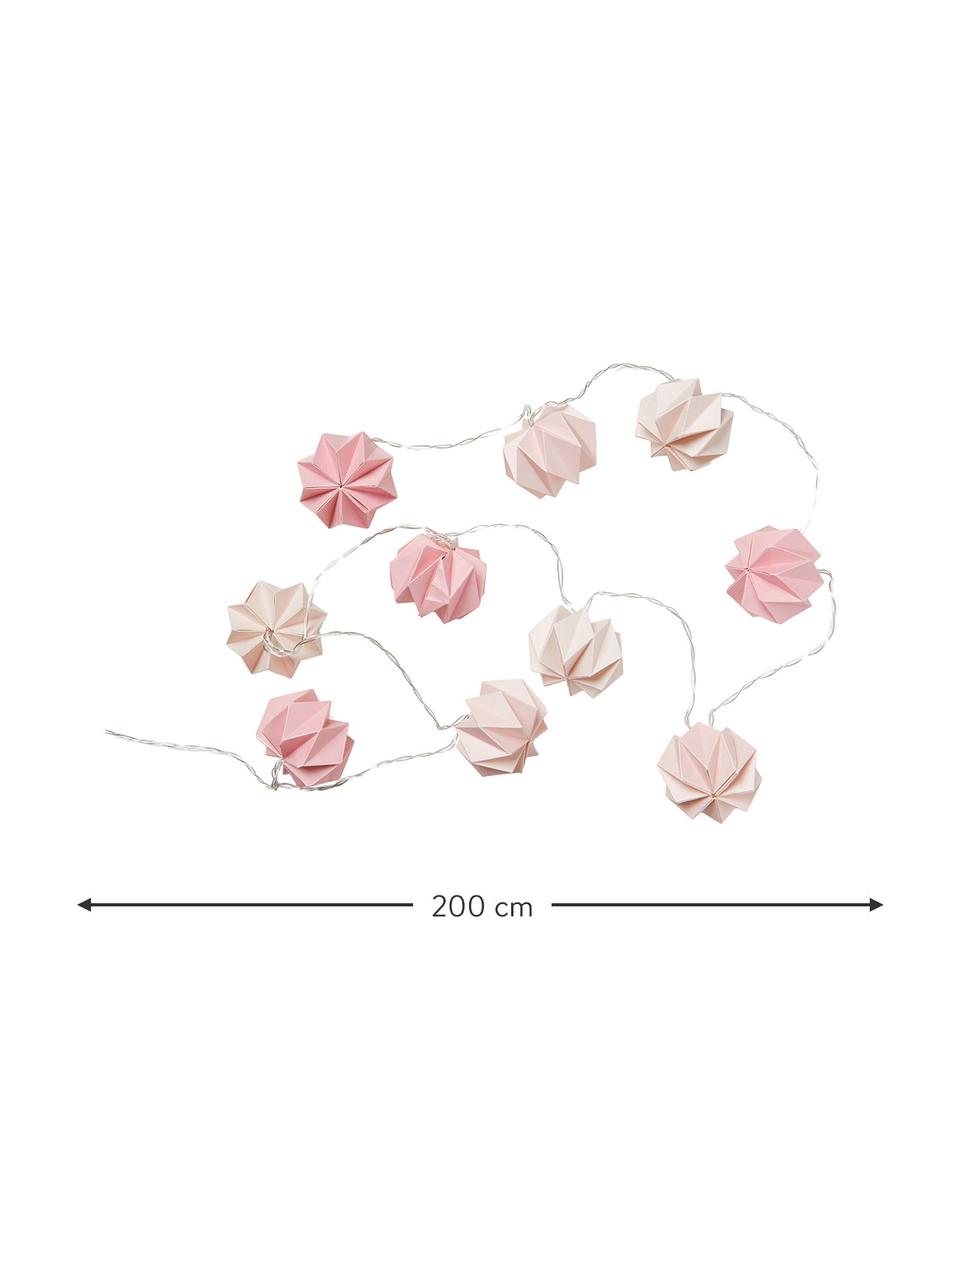 Světelný řetěz Origami, Papír, Odstíny růžové, D 200 cm